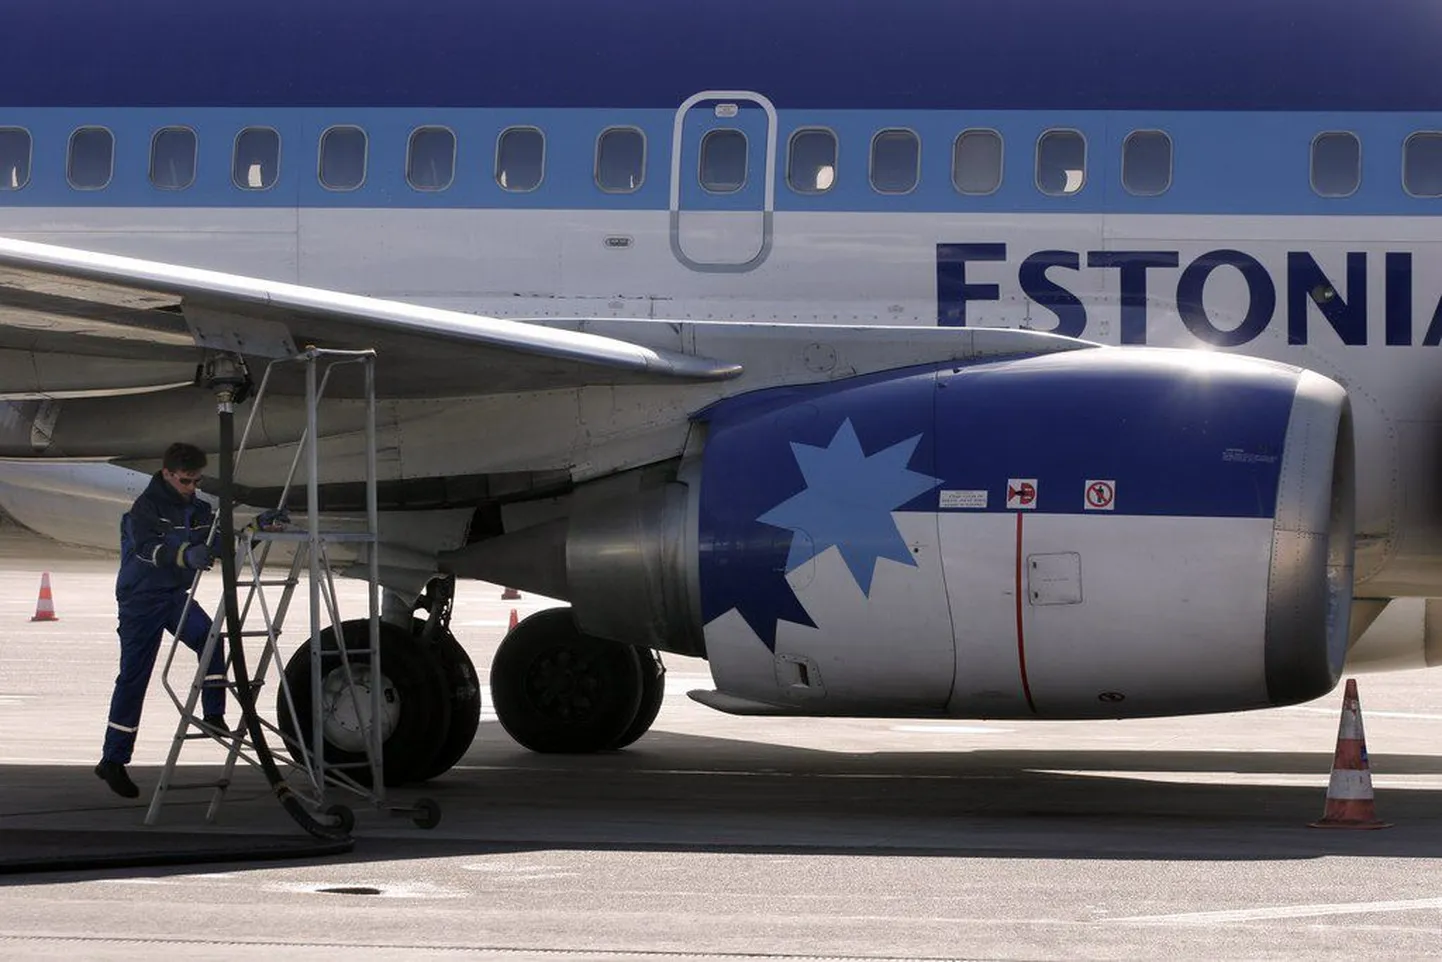 Estonia Air kulutas jäähoki maailmameistrivõistlustele 200 000 eurot.